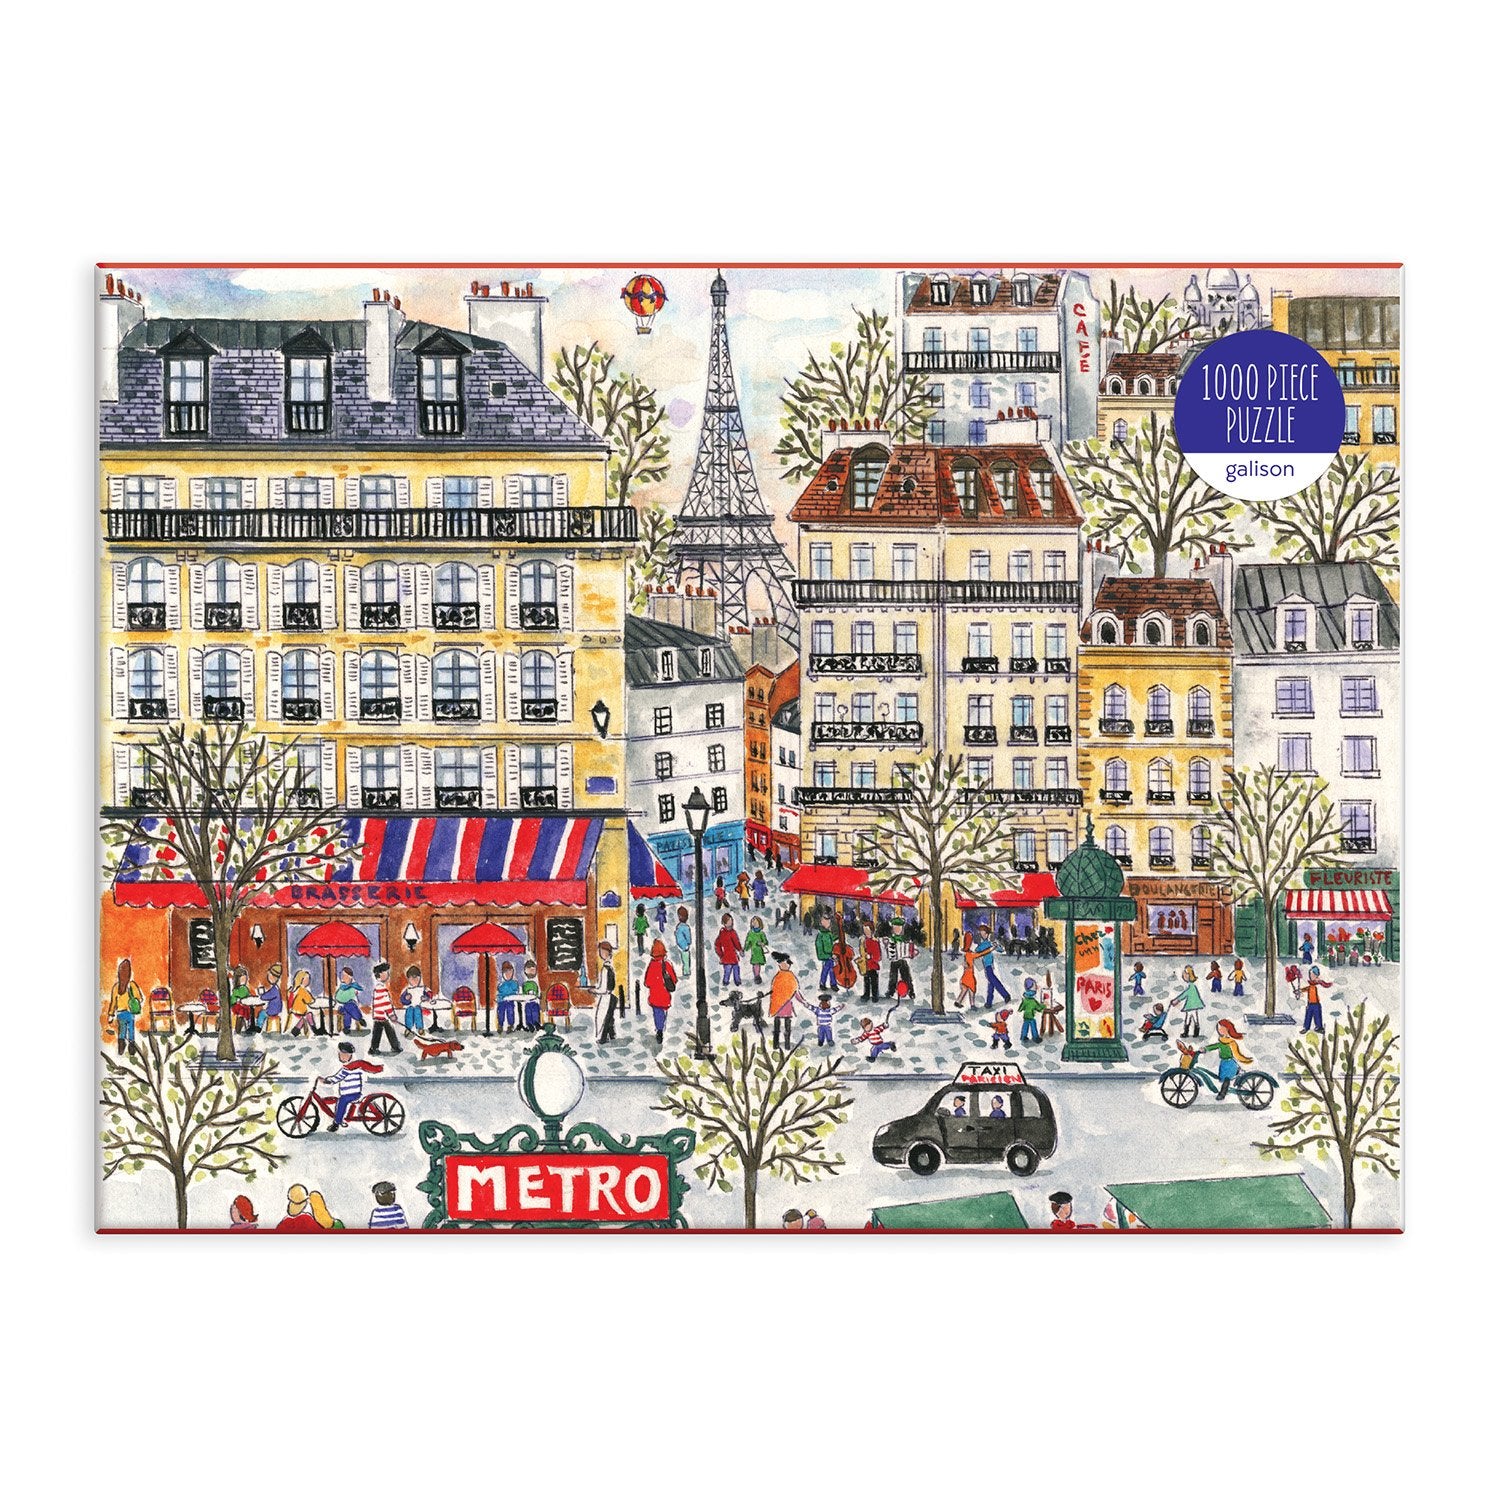 Puzzle 1000 pièces - Monuments paris